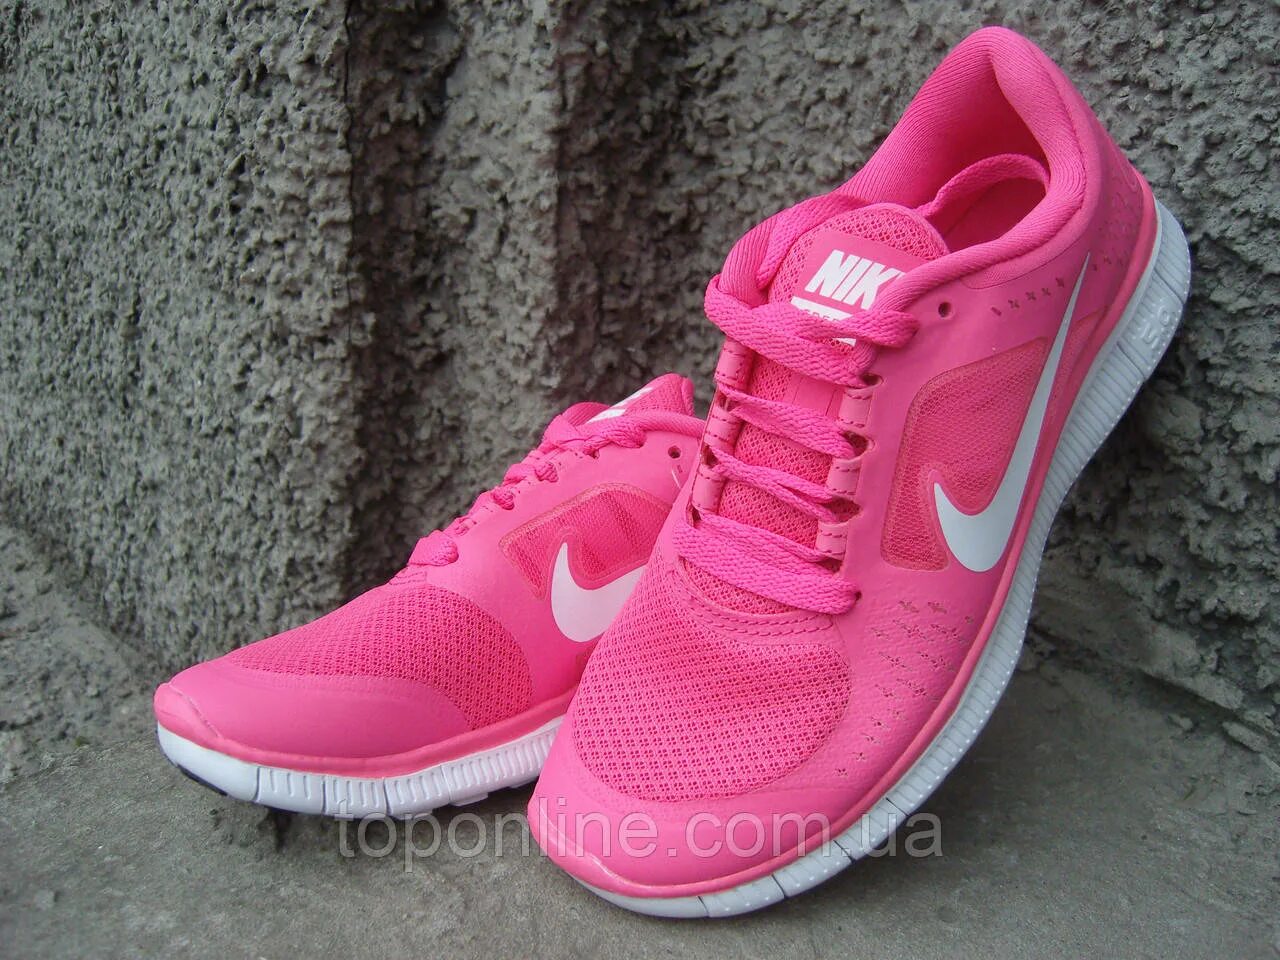 Кроссовки найк женские размер 31. Кроссовки найк розовые беговые. Nike c270 кроссовки розовые.